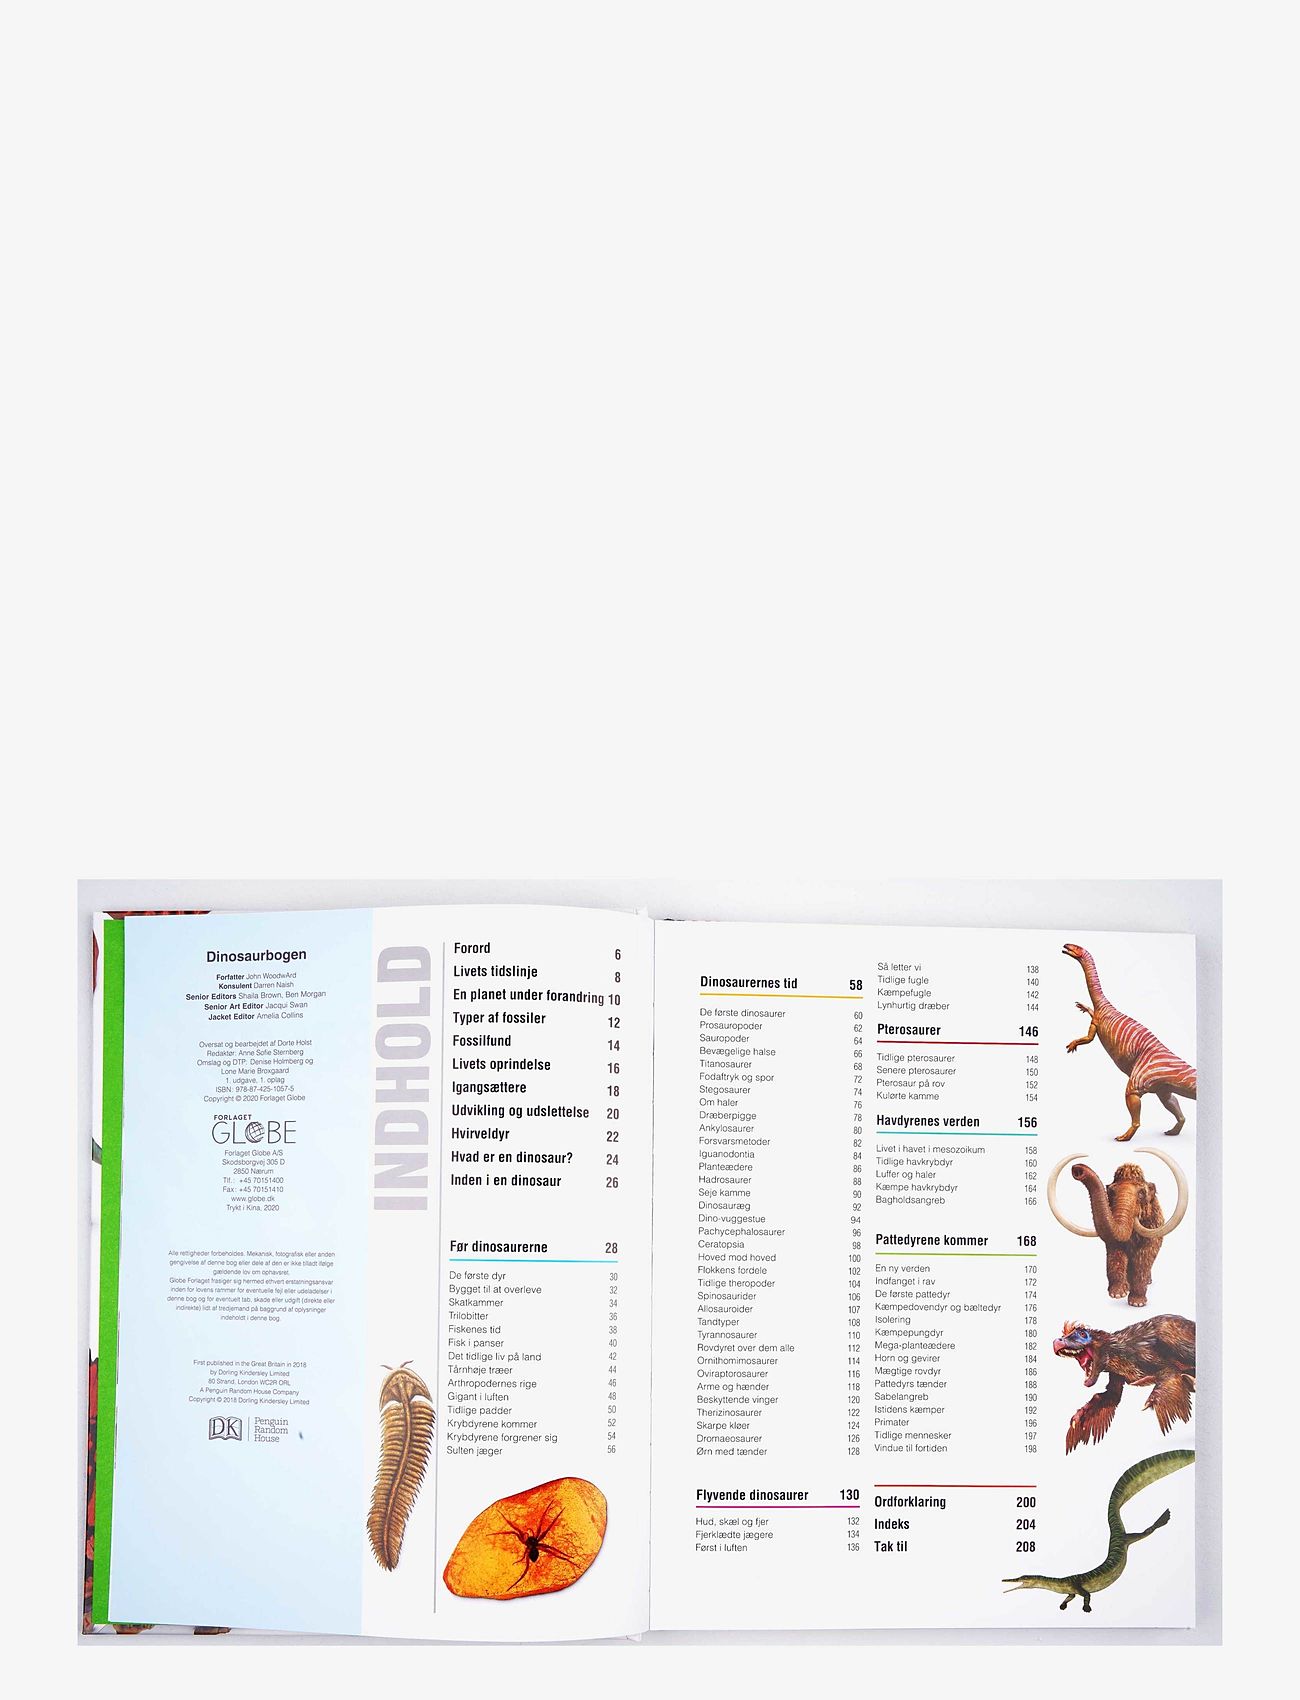 GLOBE - Dinosaurbogen - die niedrigsten preise - children's book - 1